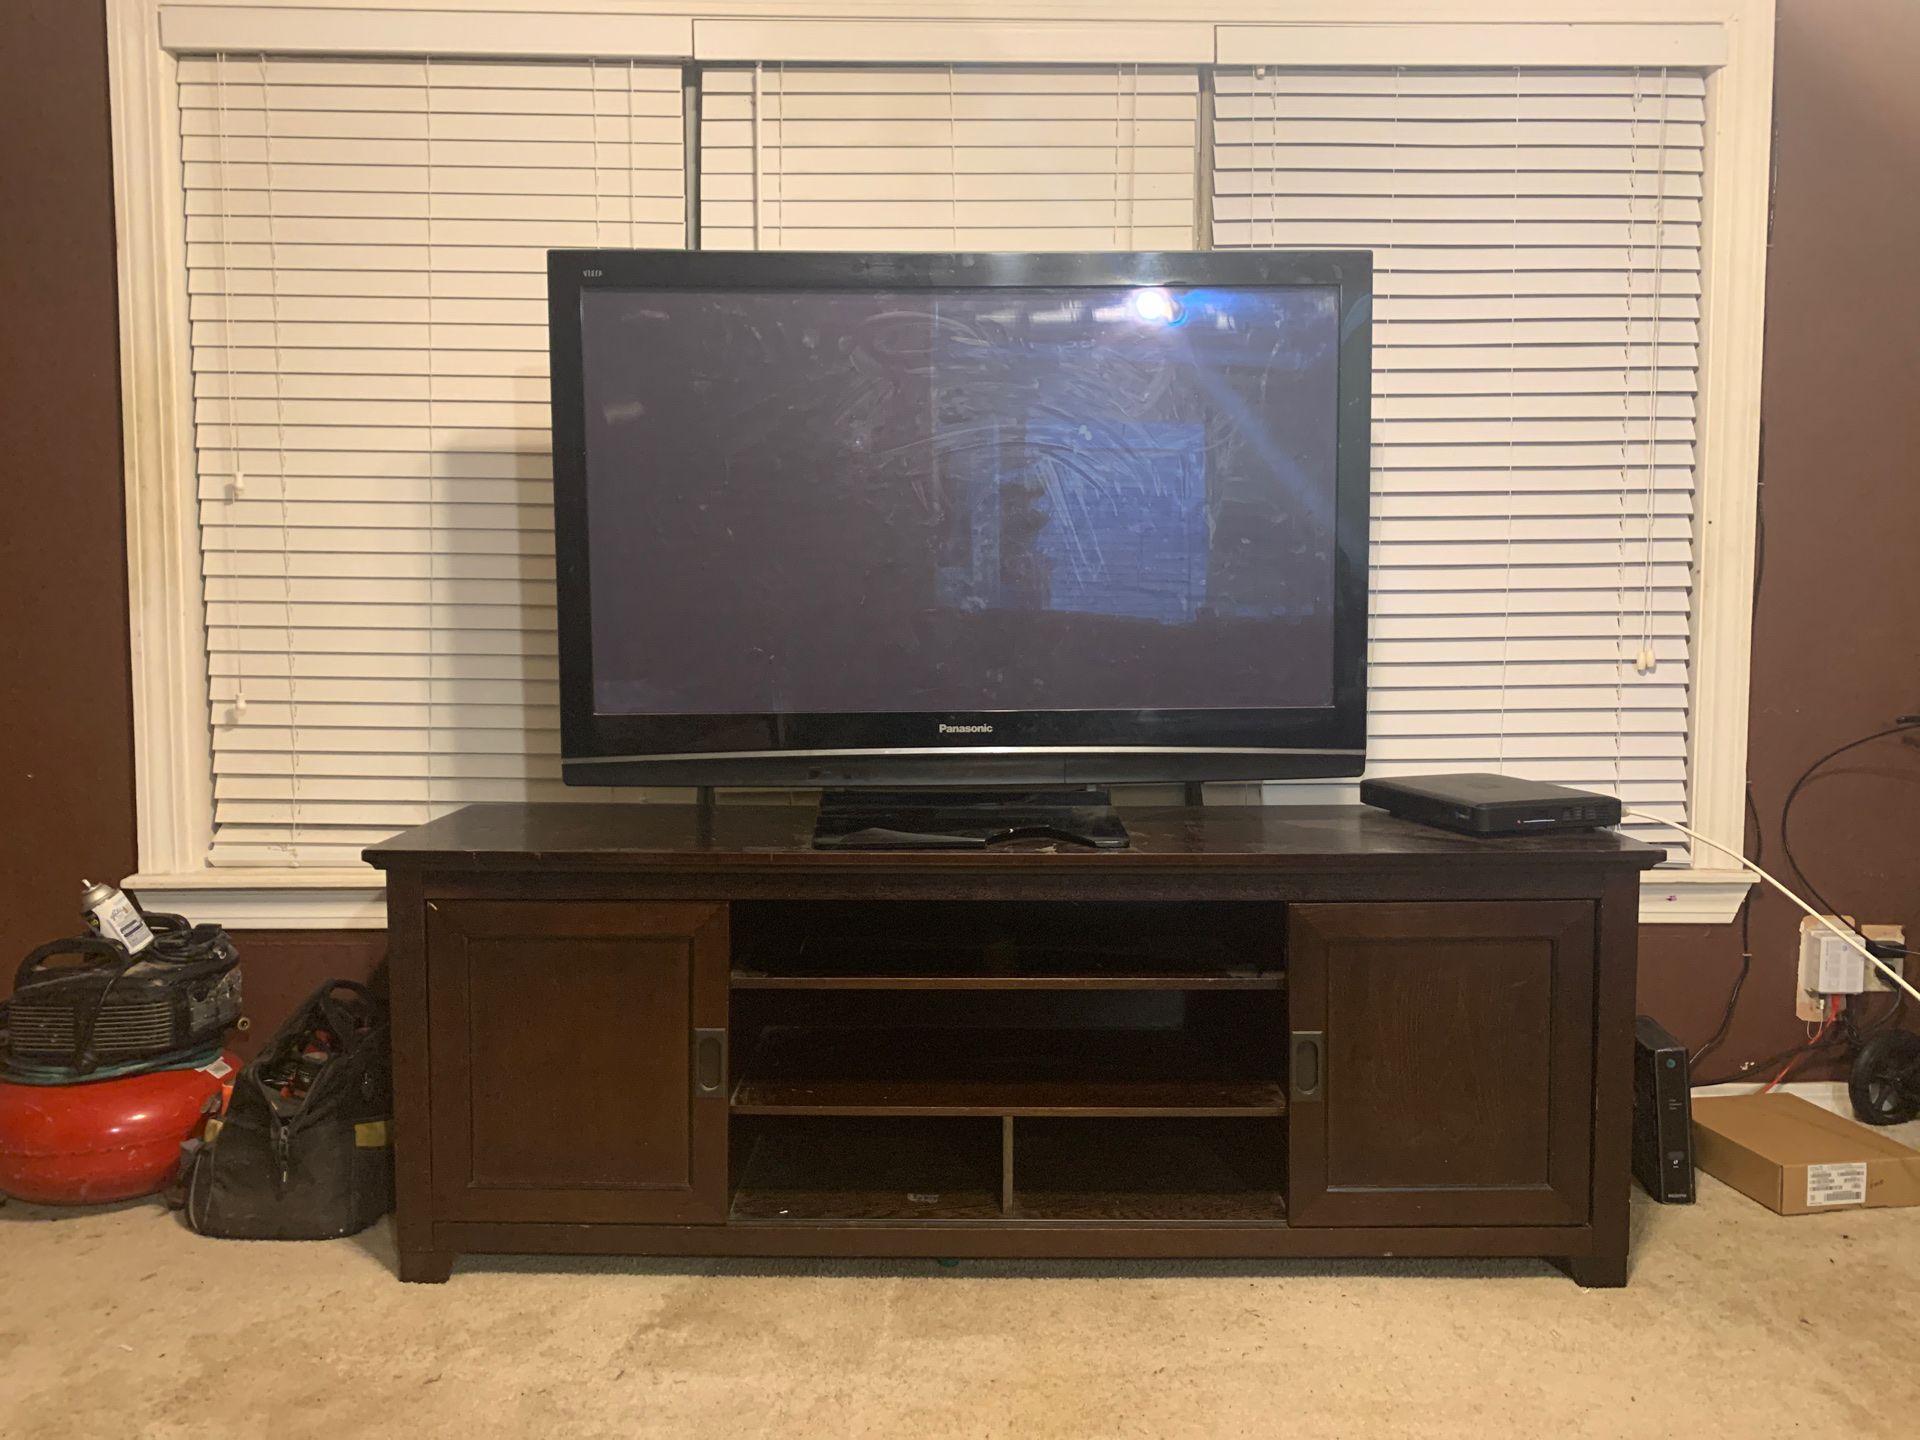 Panasonic tv with tv stand